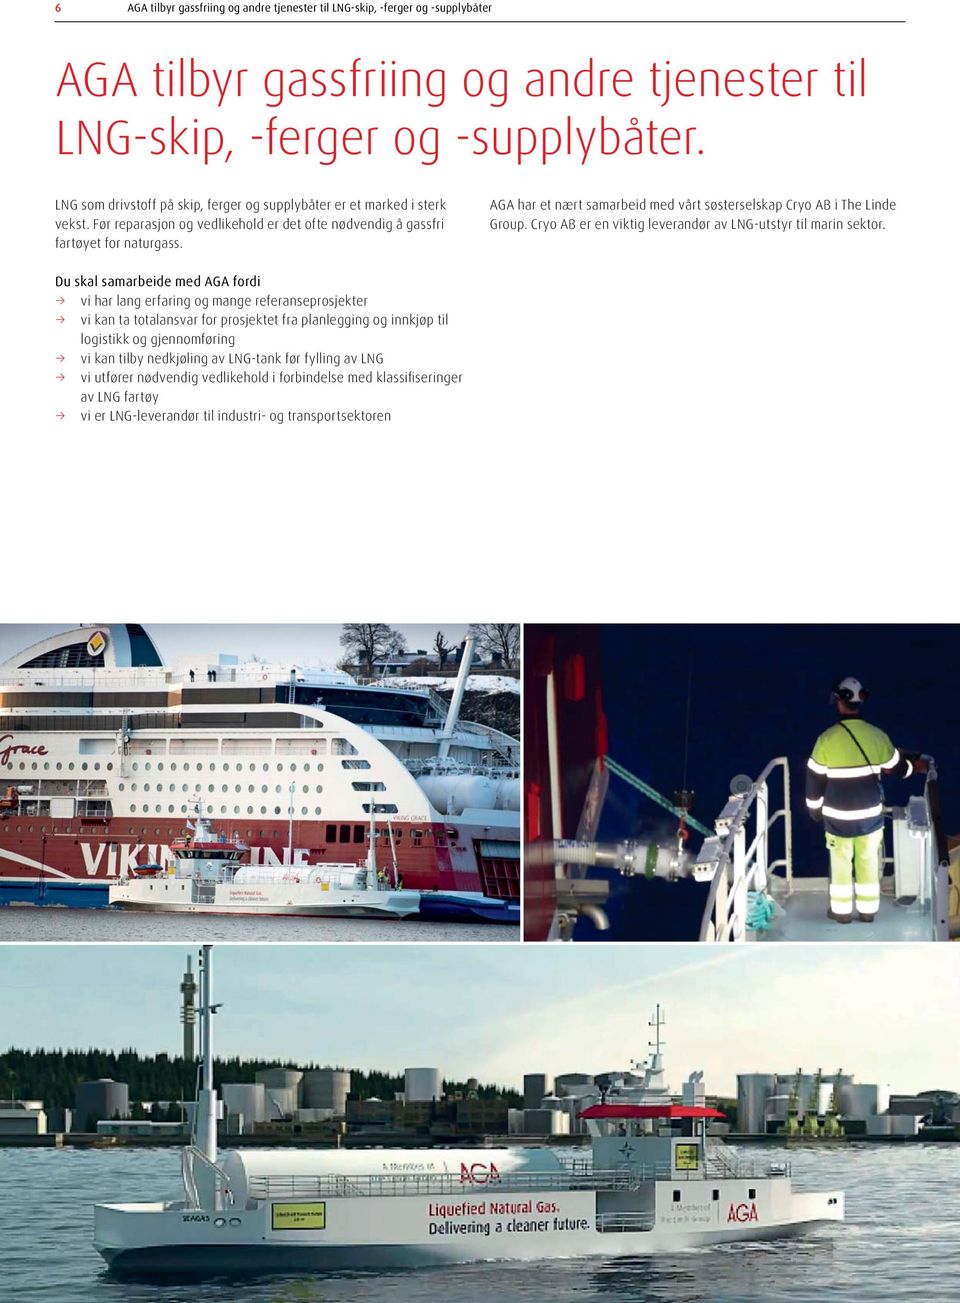 AGA har et nært samarbeid med vårt søsterselskap Cryo AB i The Linde Group. Cryo AB er en viktig leverandør av LNG-utstyr til marin sektor.